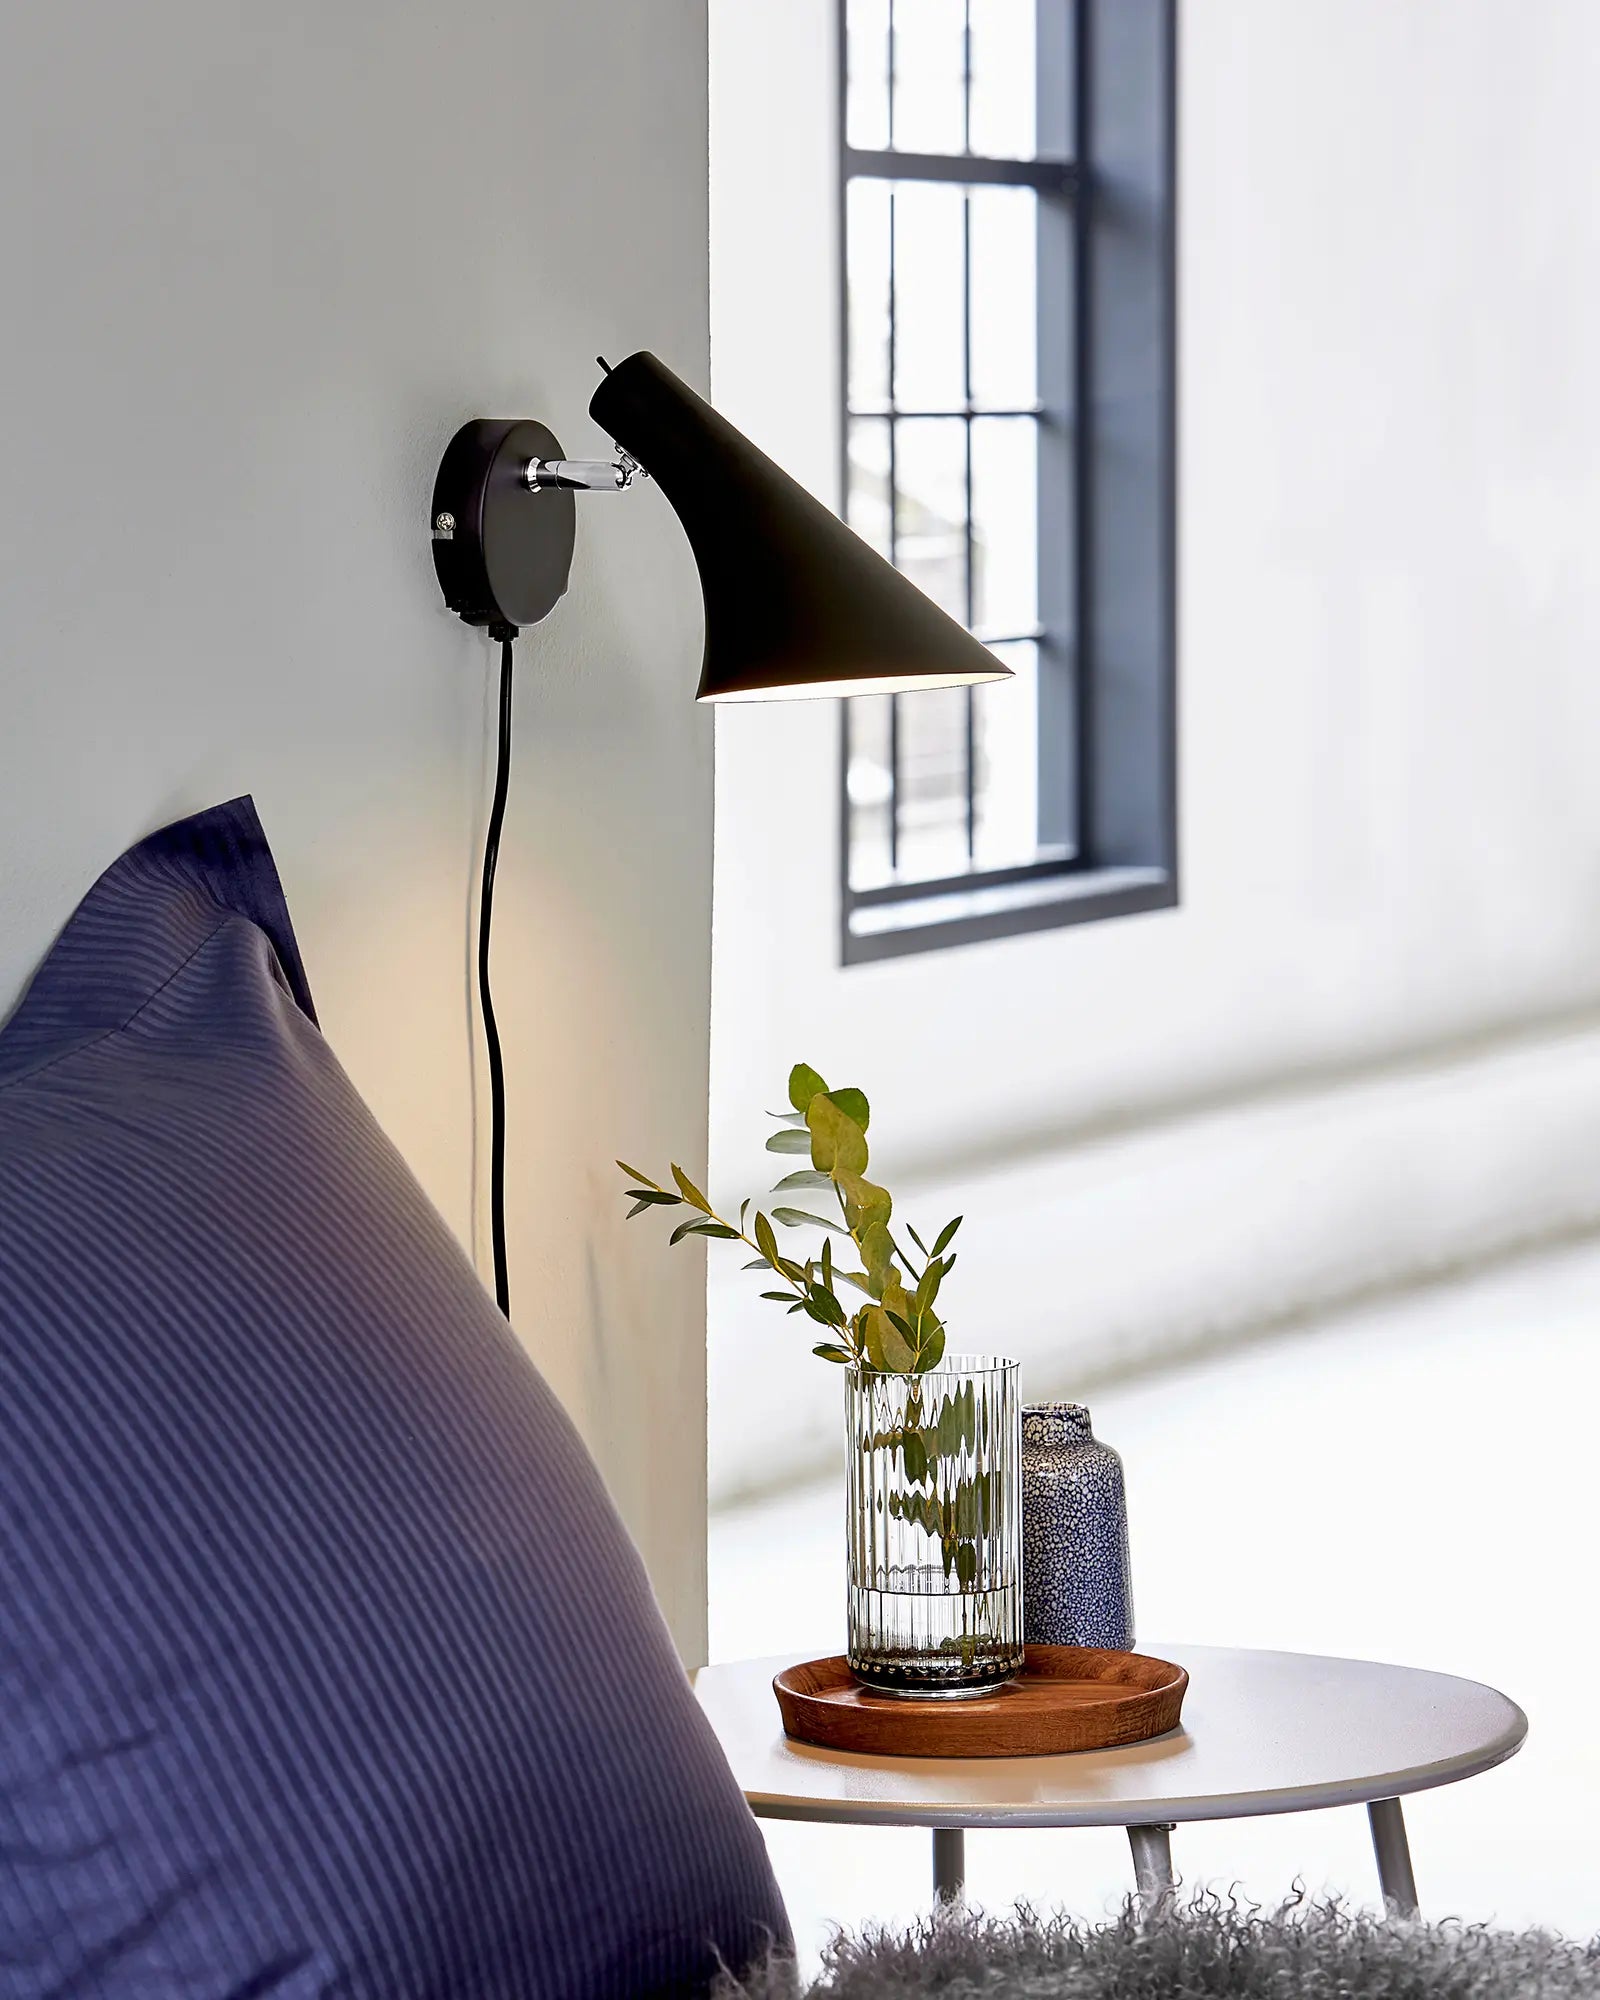 Vanila Scandinavian contemporary adjustable wall light black bed side